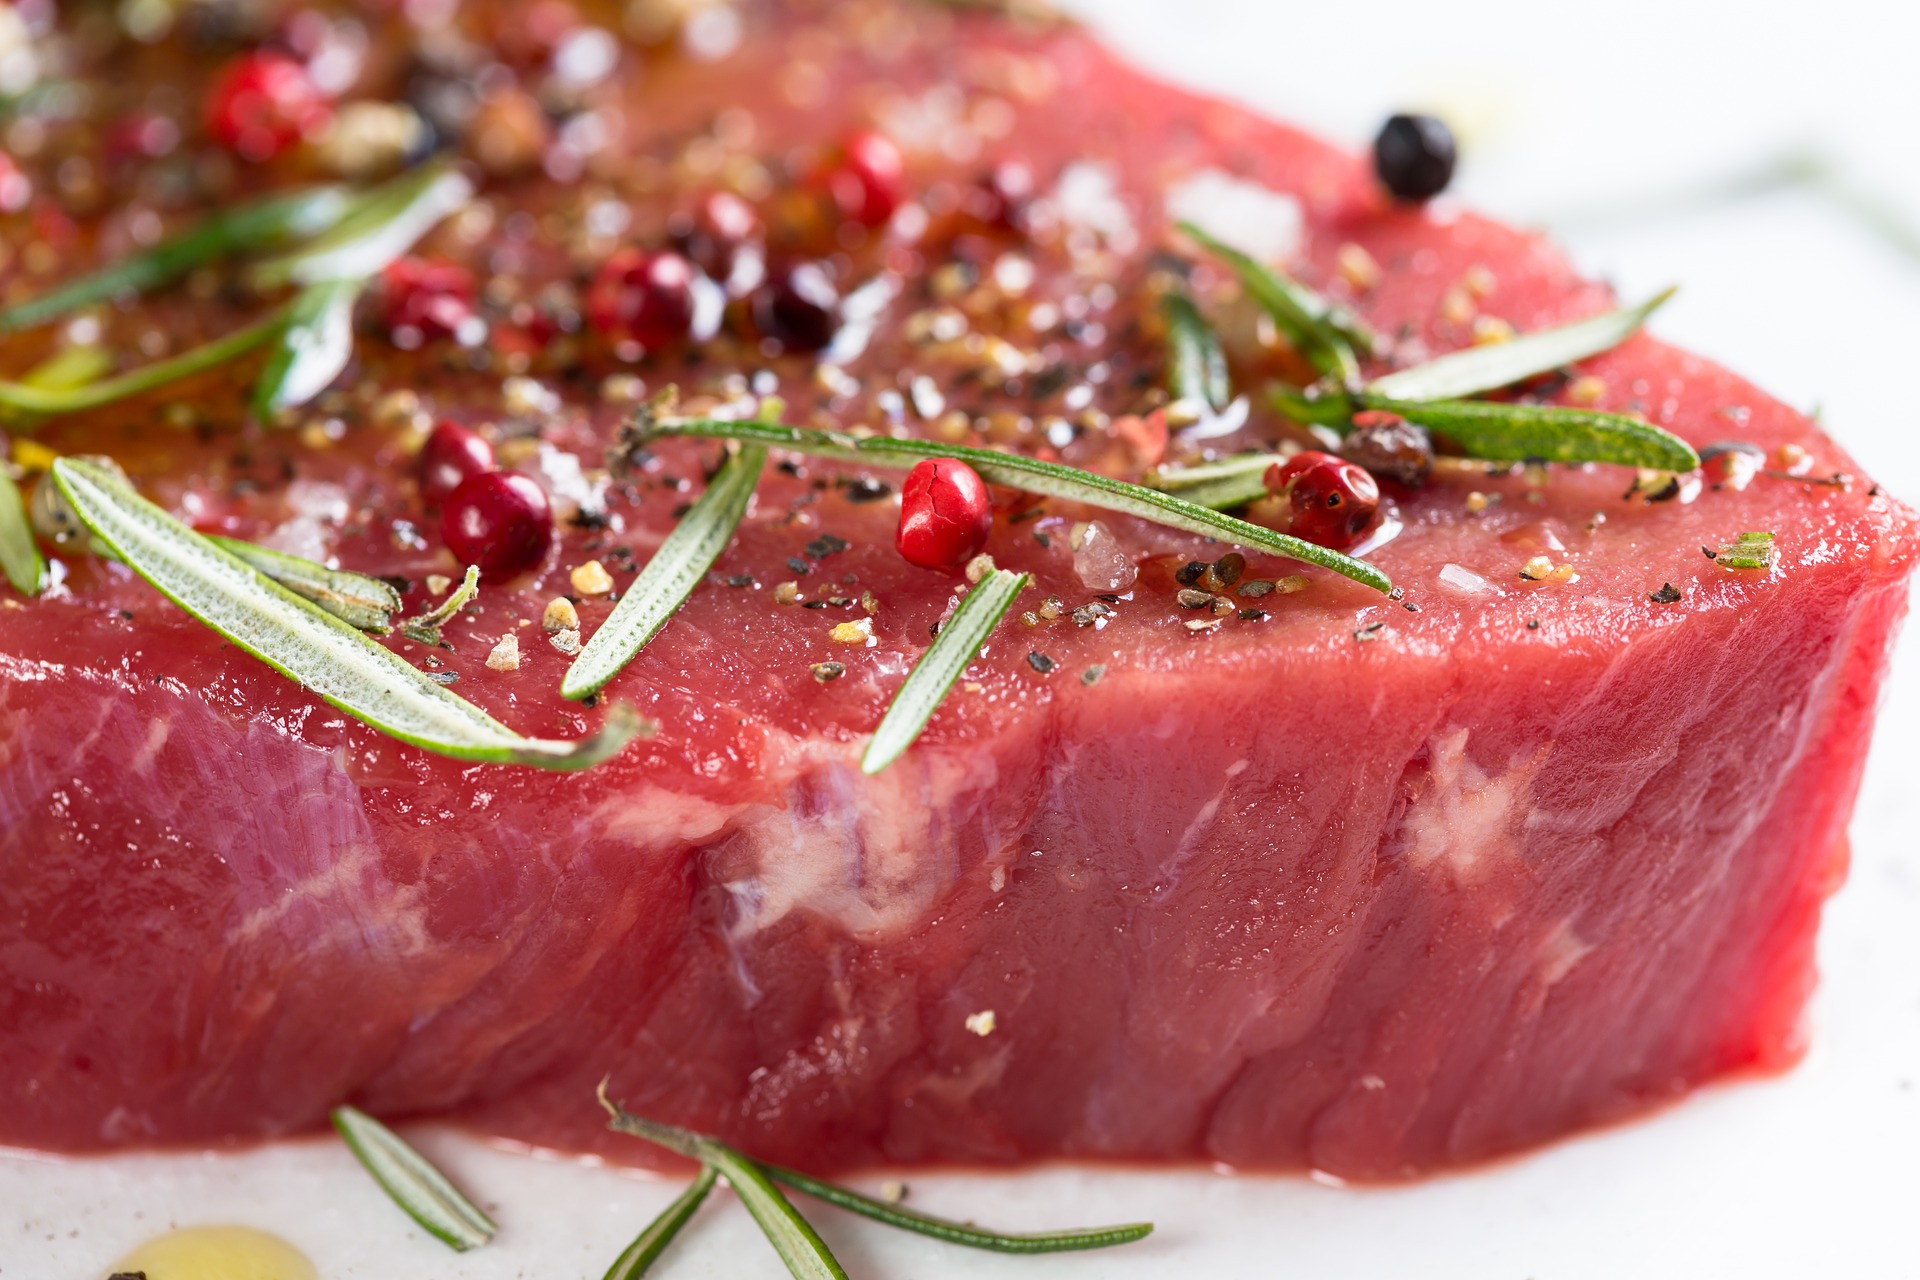 Greška kod pripreme mesa koja može biti opasna po zdravlje